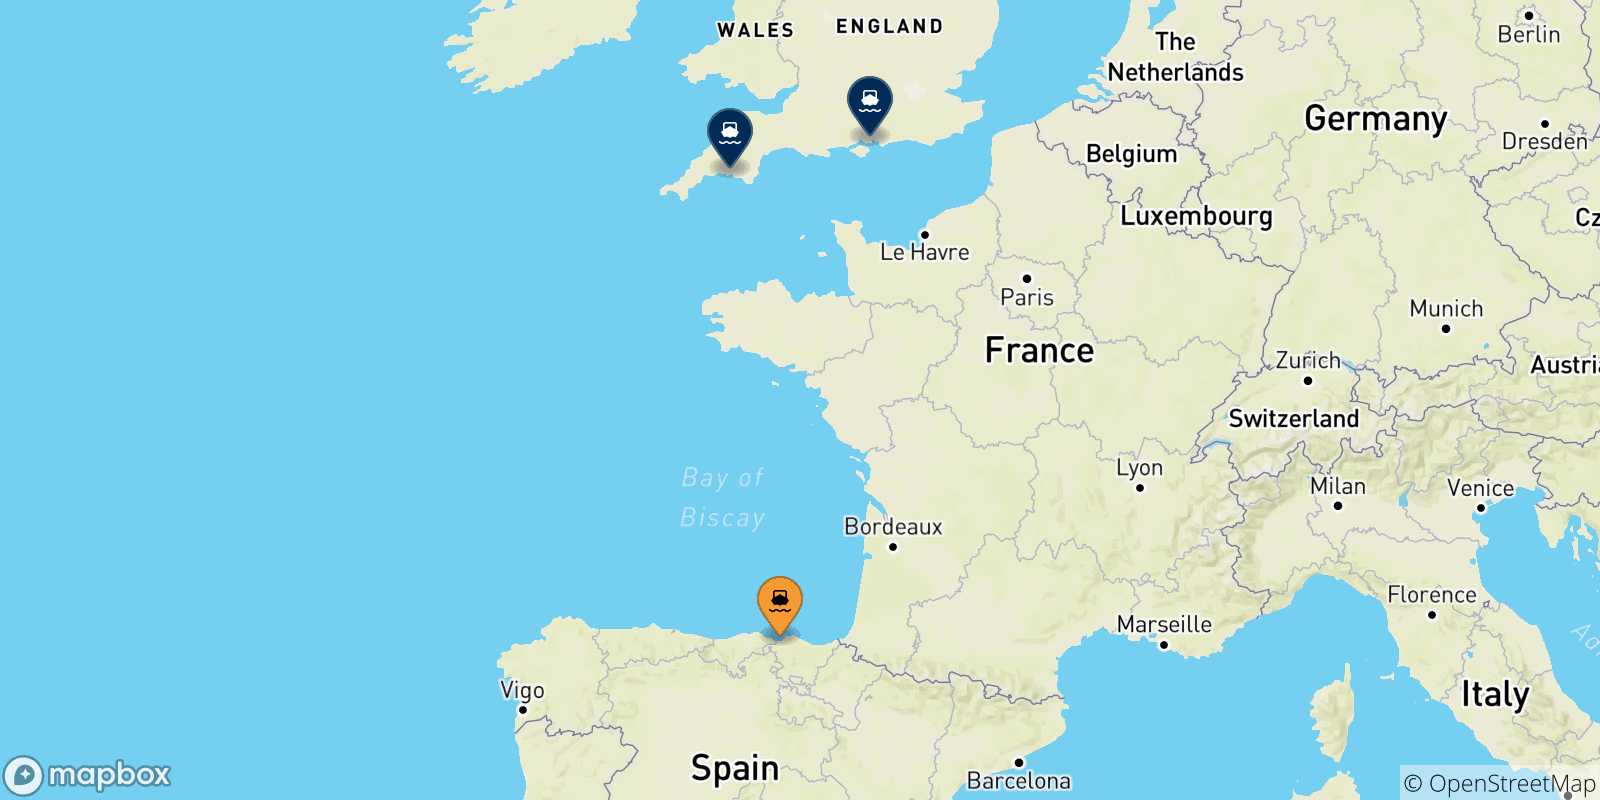 Mappa delle possibili rotte tra Bilbao e il Regno Unito